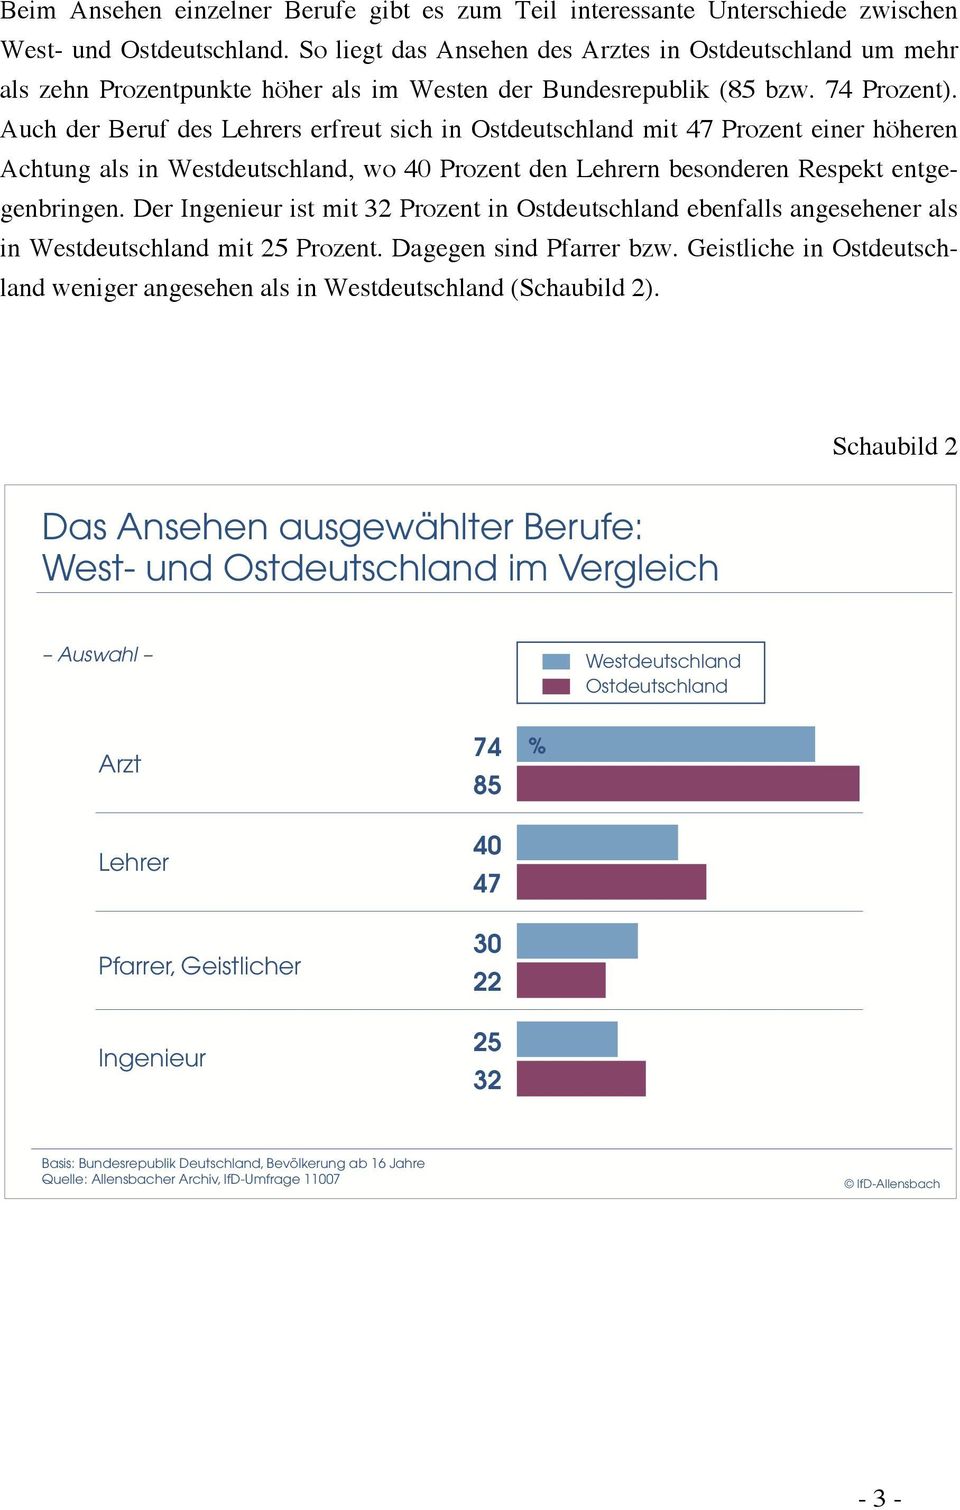 Auch der Beruf des Lehrers erfreut sich in Ostdeutschland mit 47 Prozent einer höheren Achtung als in Westdeutschland, wo 40 Prozent den Lehrern besonderen Respekt entgegenbringen.